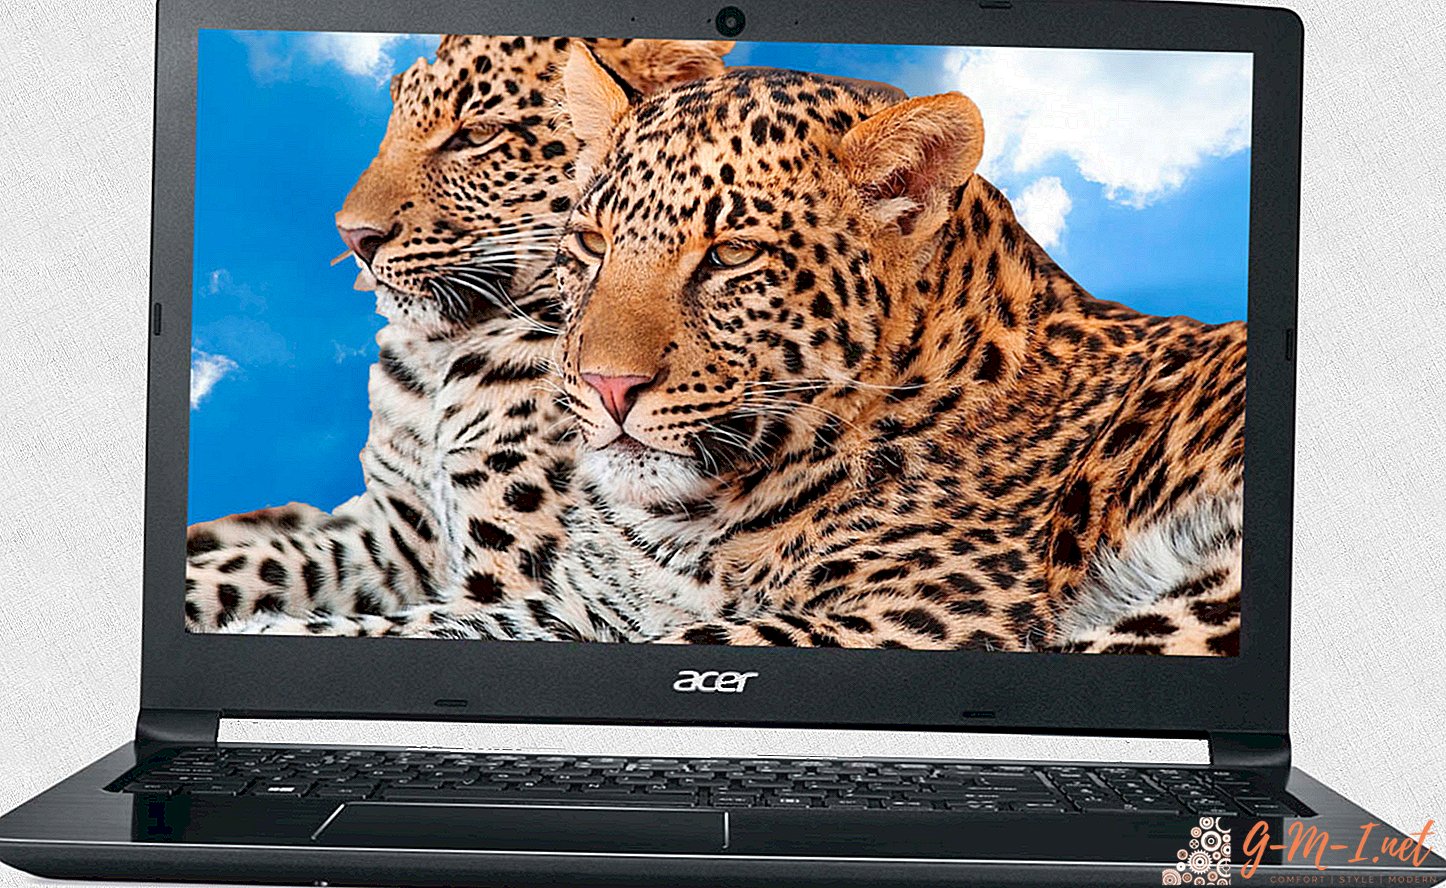 Laptop für Photoshop - welches ist besser?